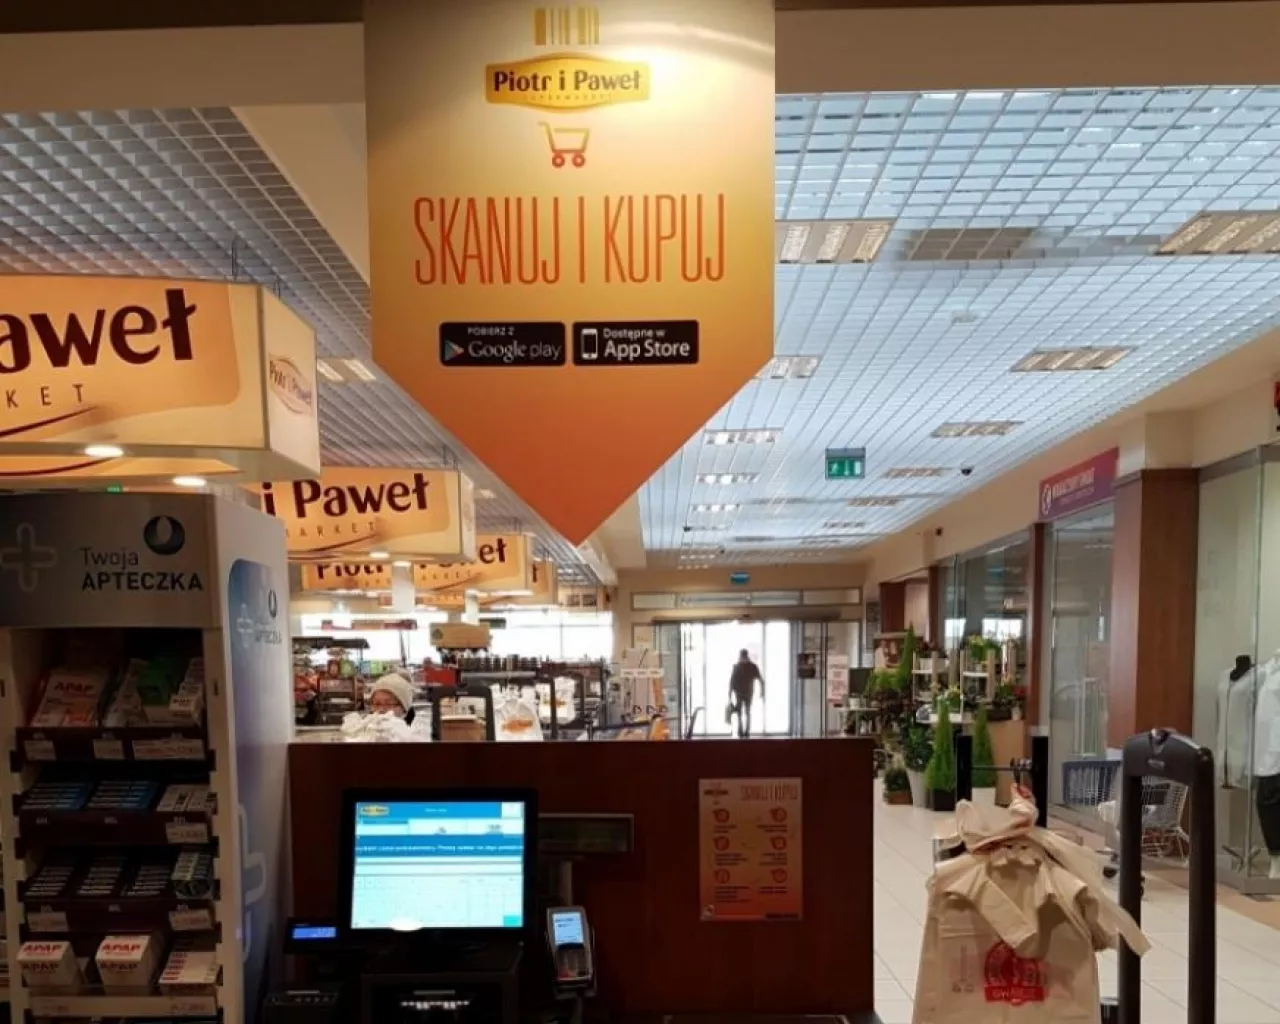 Usługa Skanuj i Kupuj w sklepie Piotr i Paweł (fot. materiały prasowe, Piotr i Paweł)